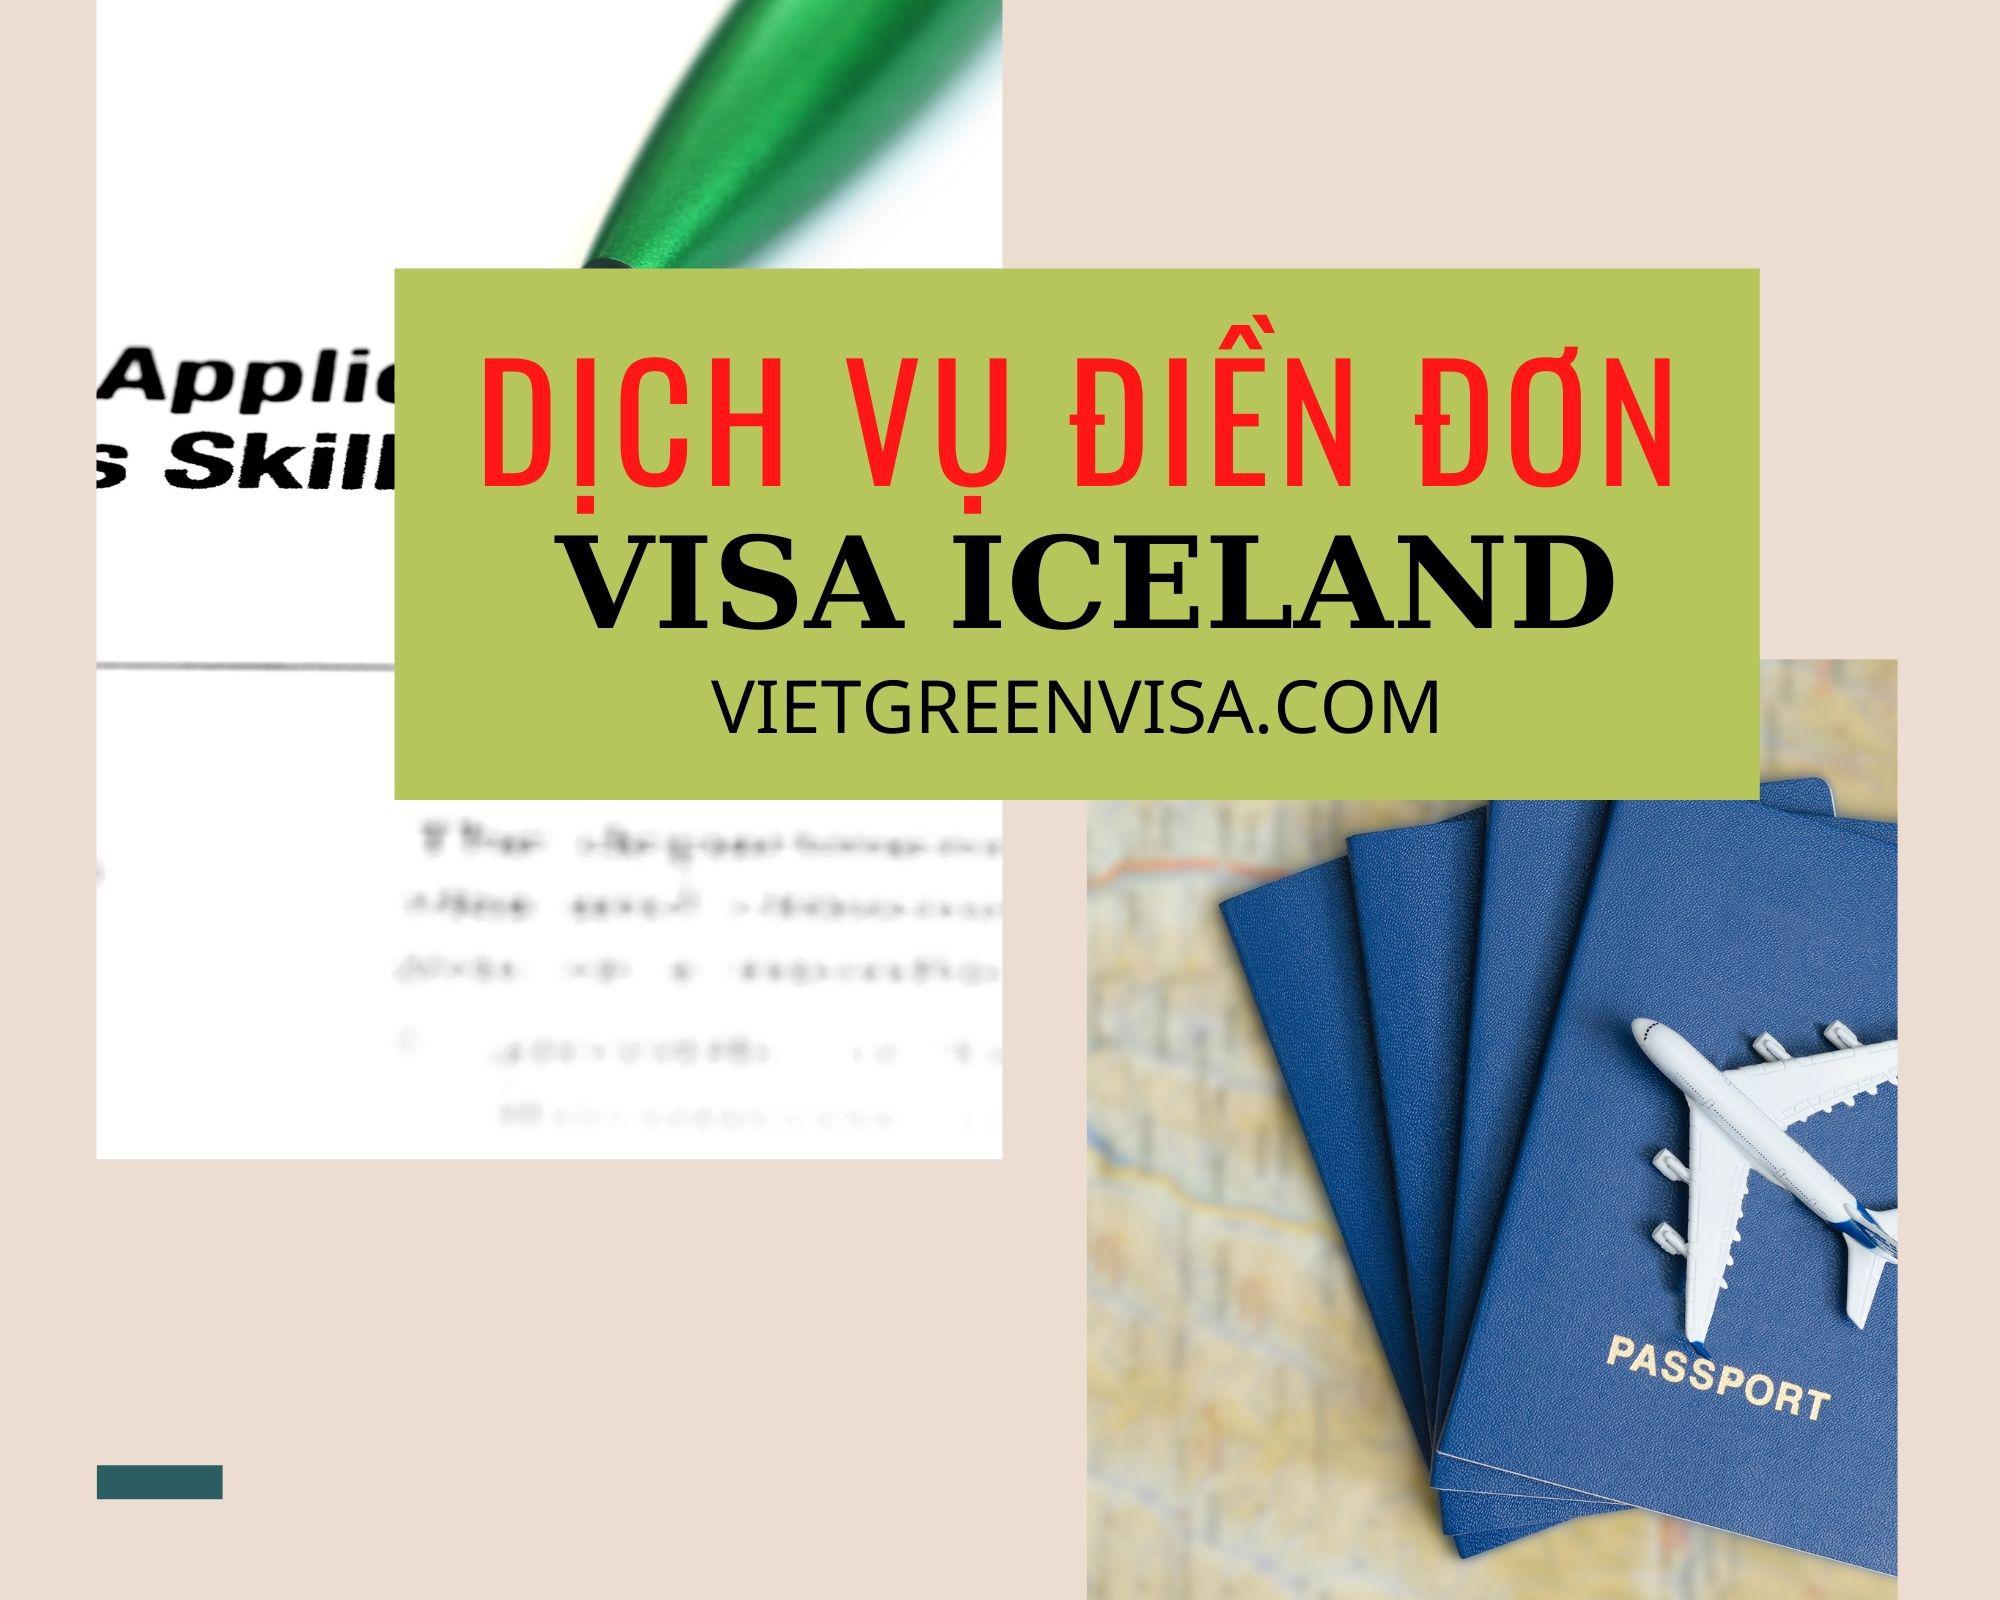 Dịch vụ điền đơn visa Iceland online nhanh chóng